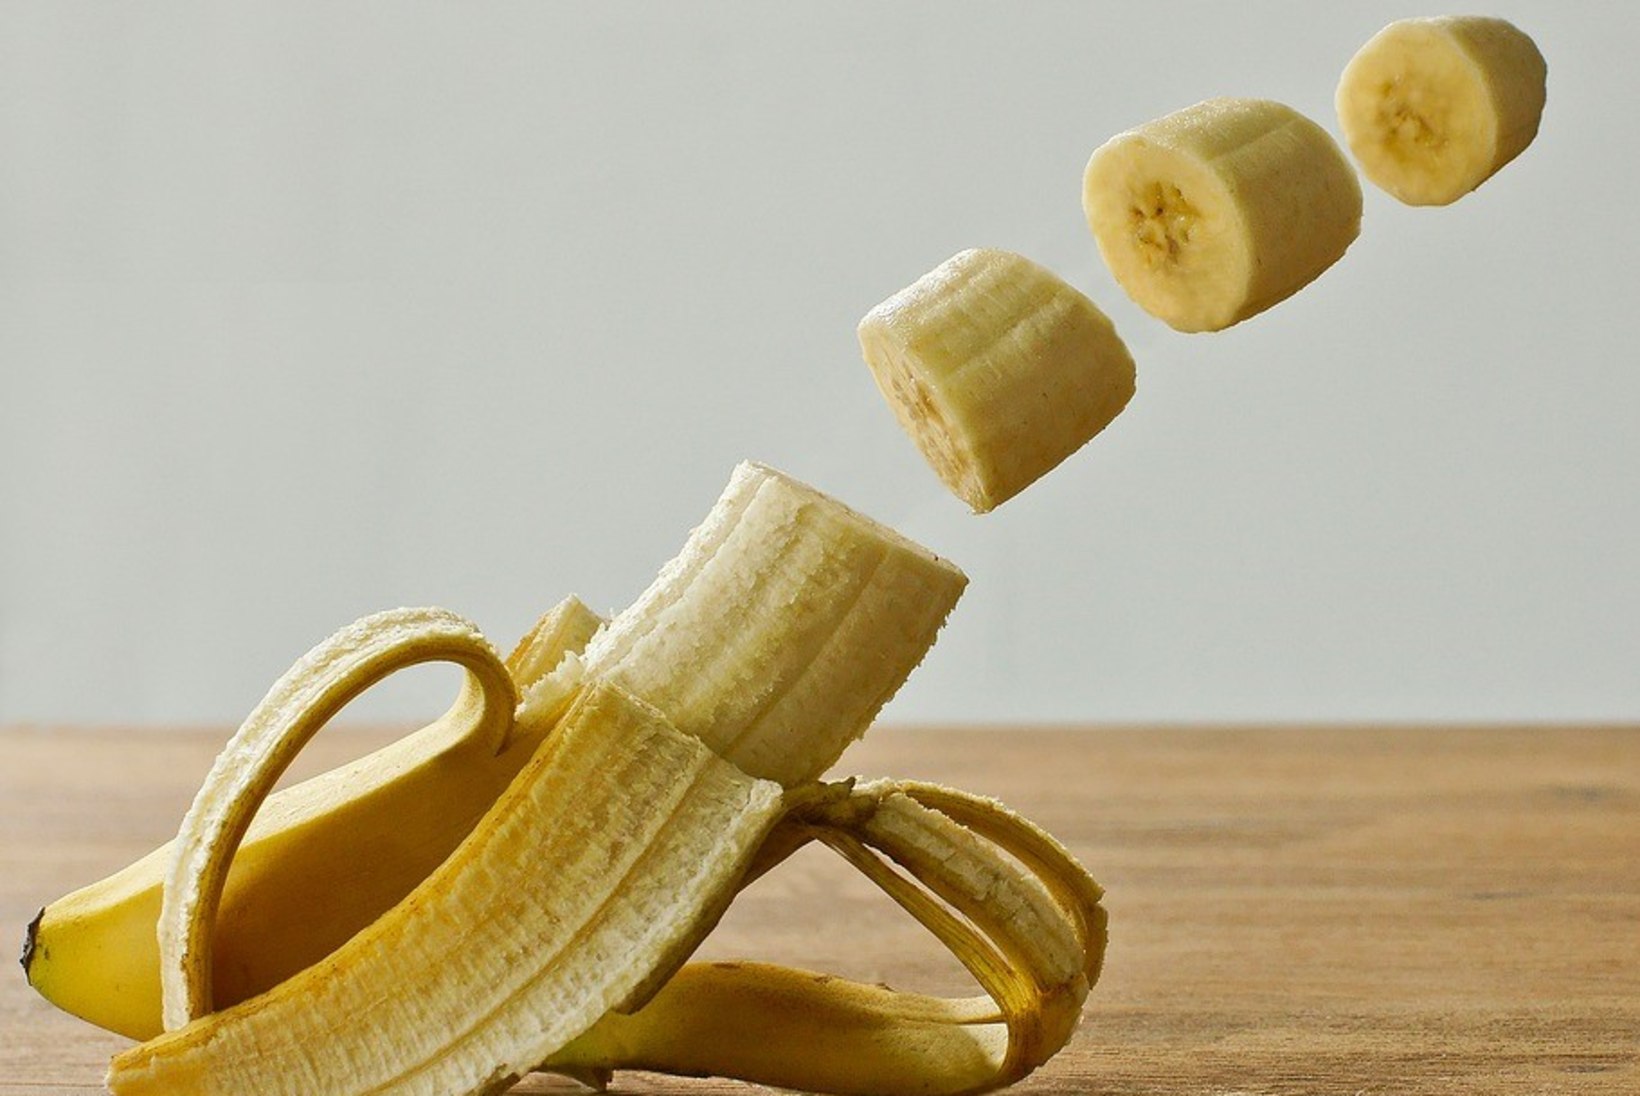 Uskumatu! Tee banaanist juuksepalsam!